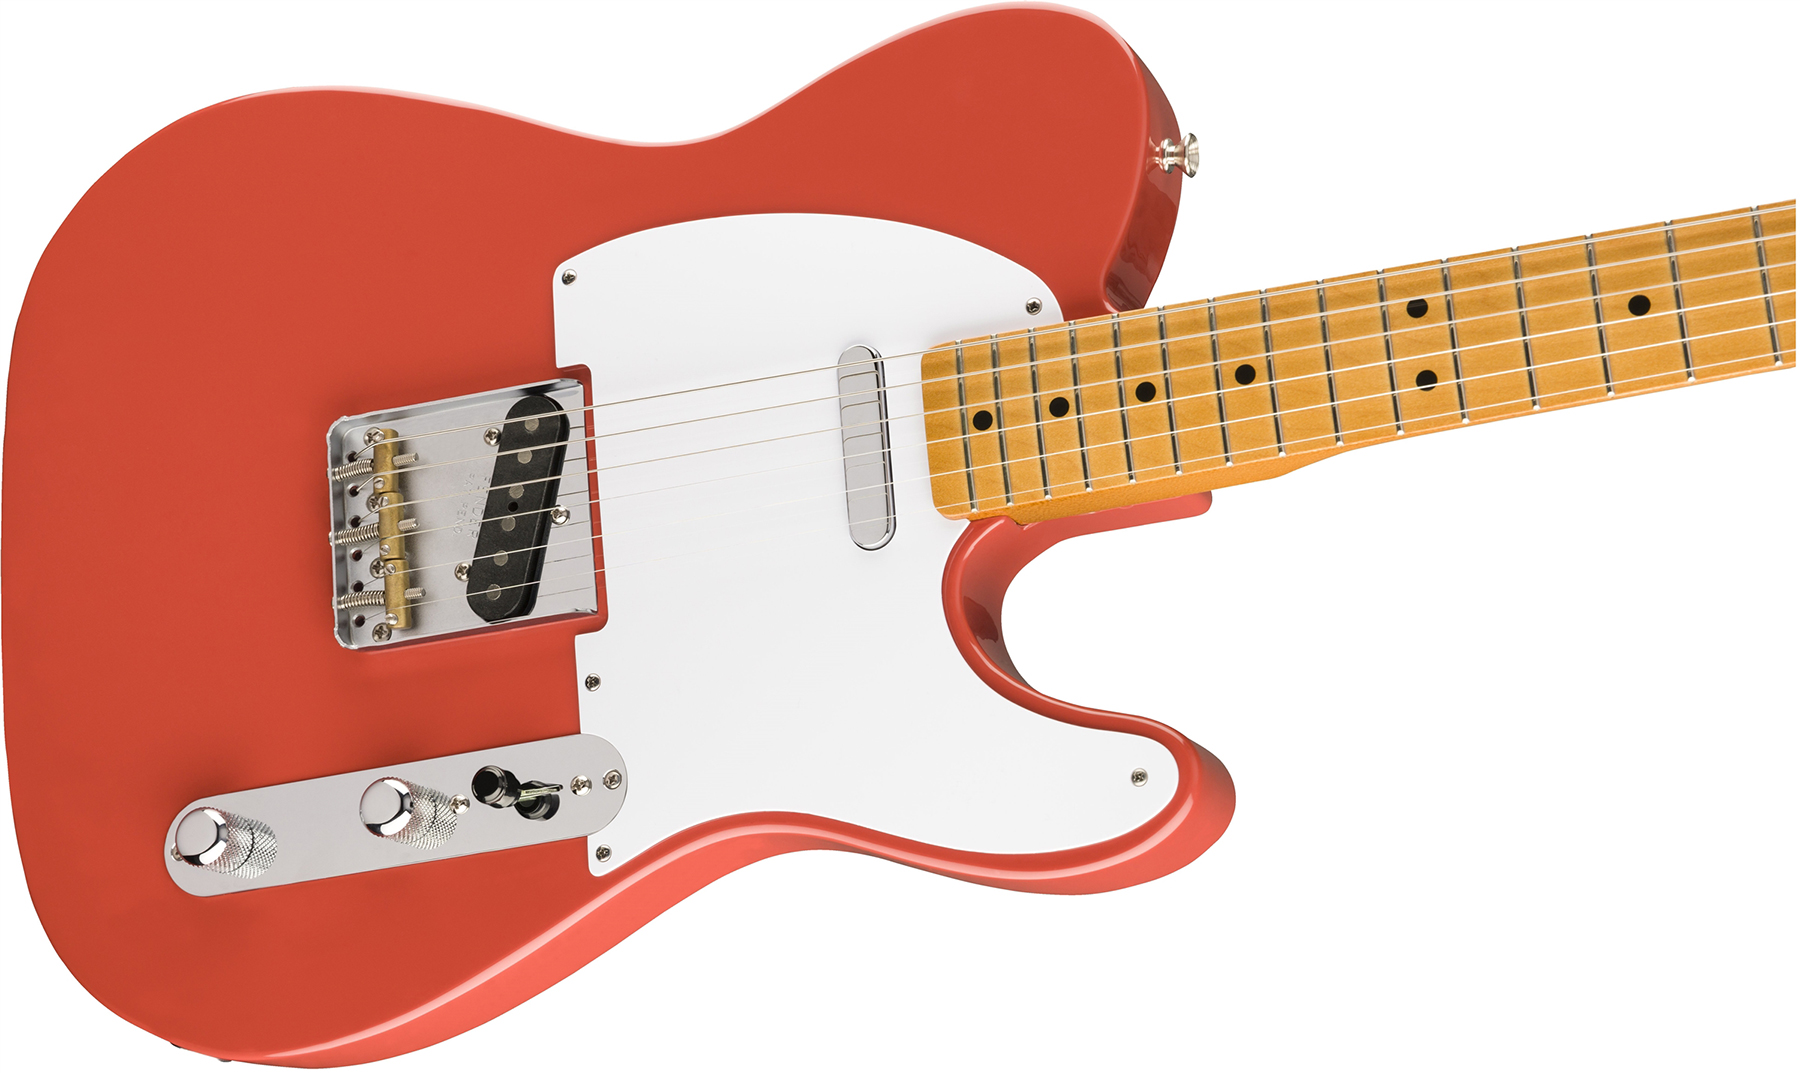 Fender Tele 50s Vintera Vintage Mex Mn - Fiesta Red - Guitarra eléctrica con forma de tel - Variation 2